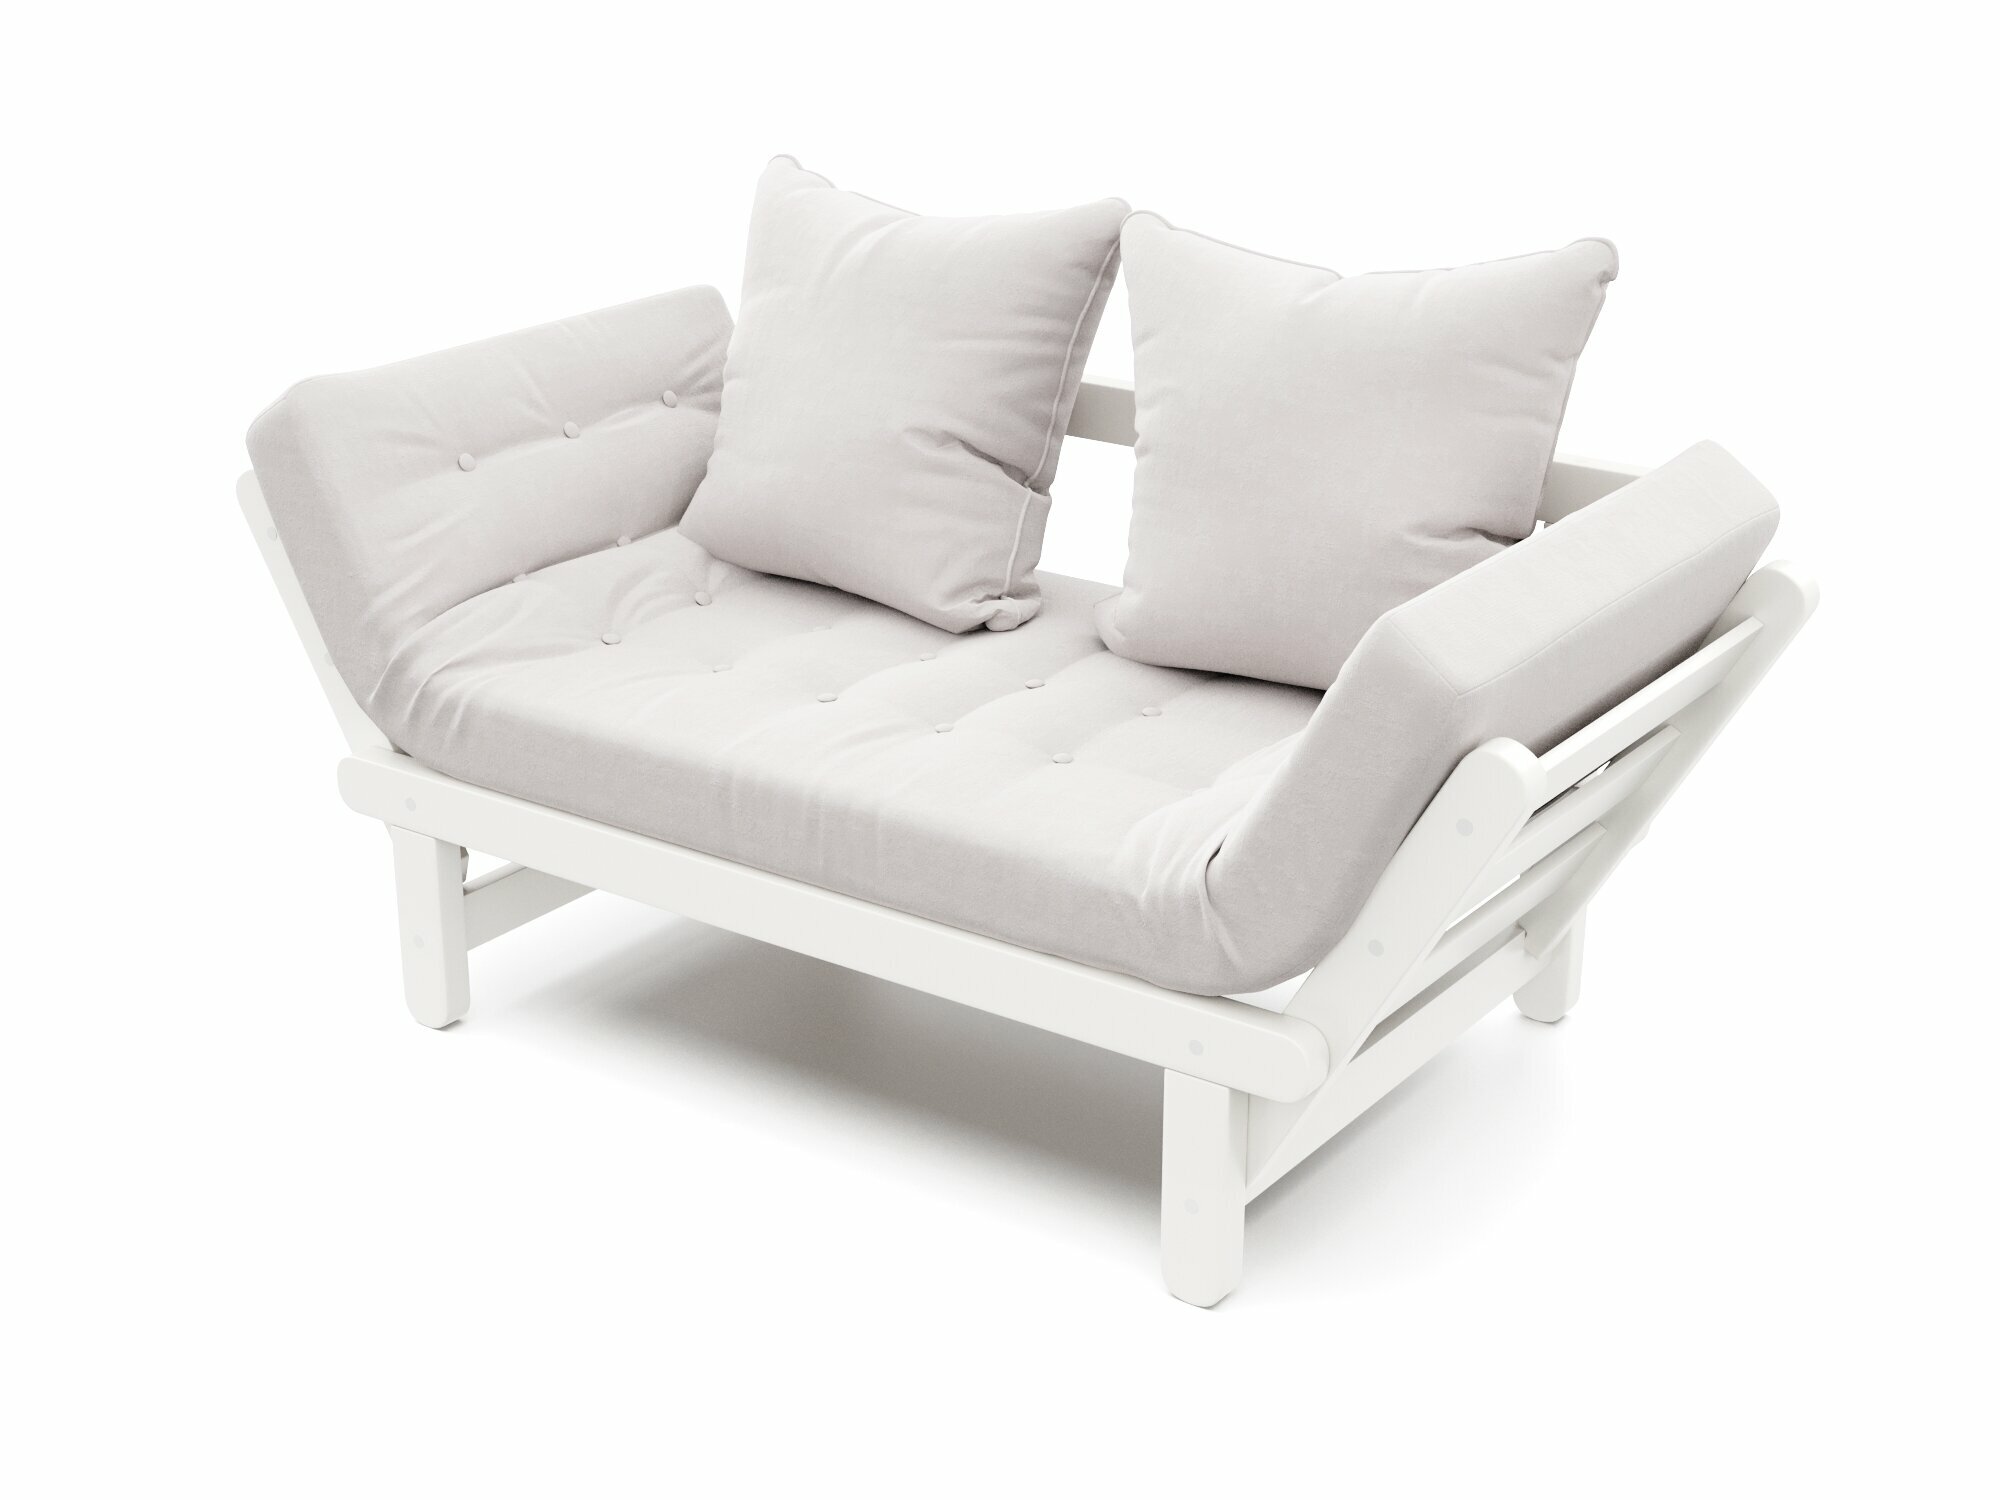 Садовый диван сламбер-с Белый-белая эмаль, велюр, деревянный, на кухню, в салон красоты, офисный, скандинавский лофт, клик кляк